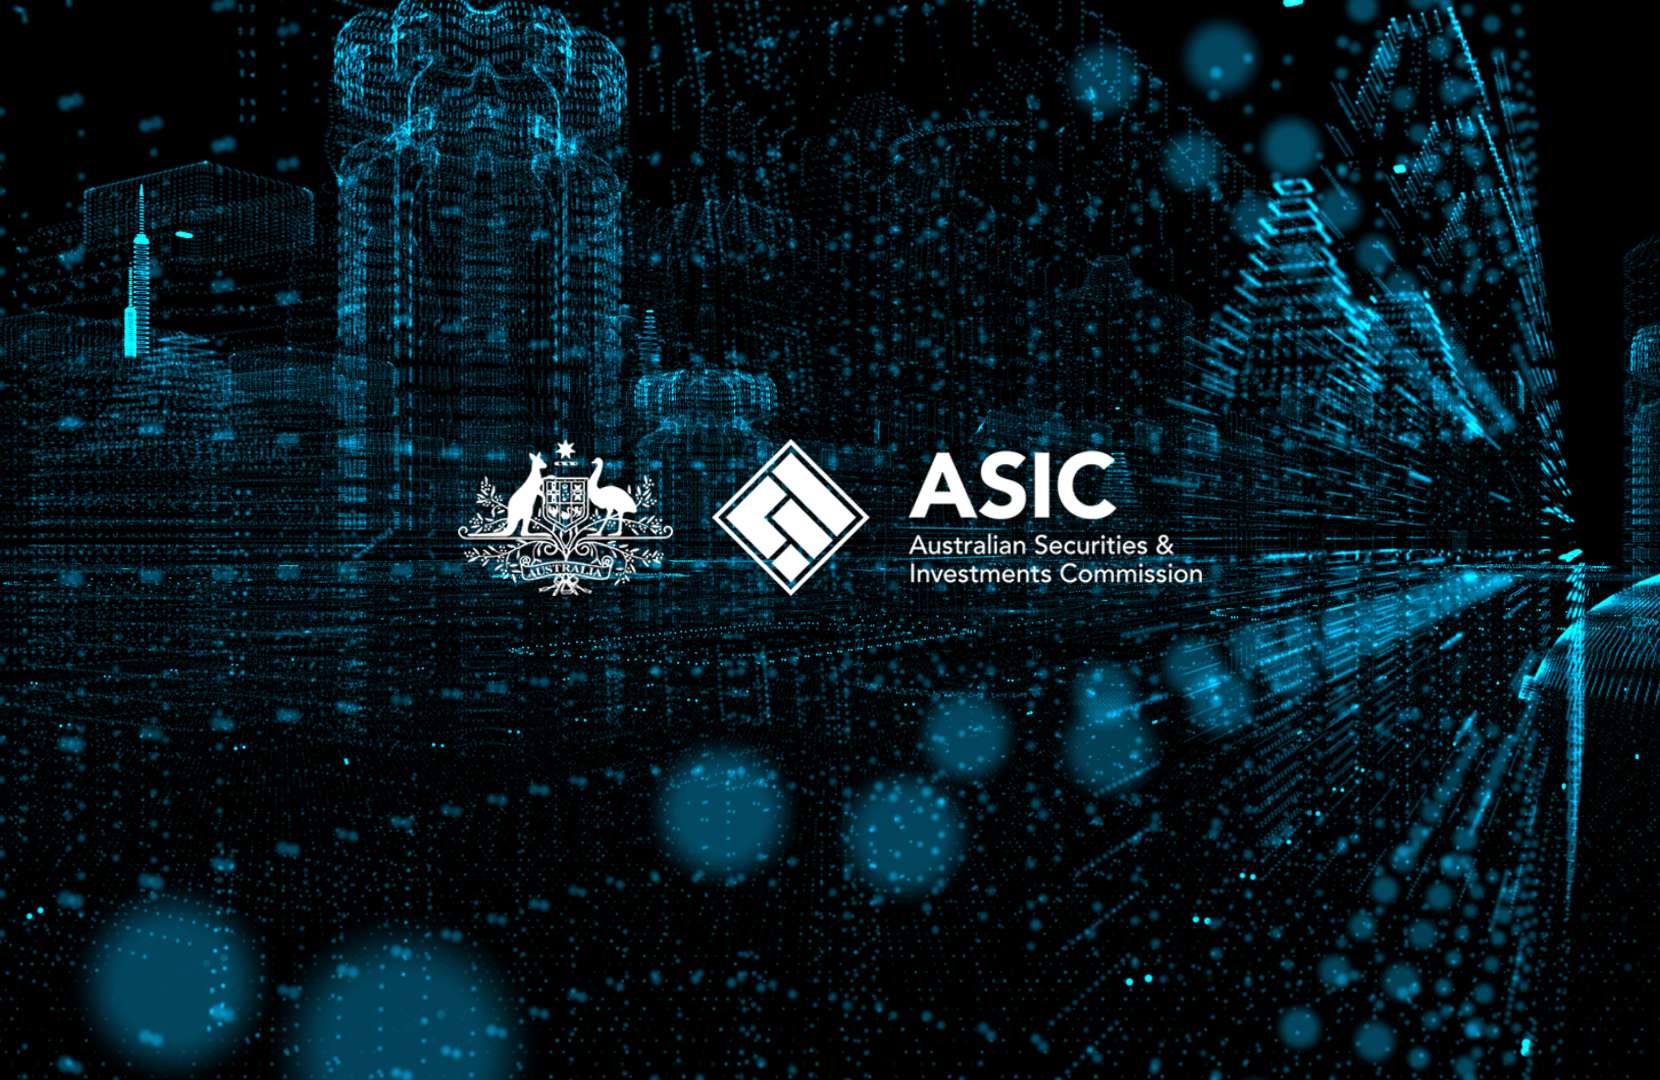 اصدرت هيئة الأوراق المالية والاستثمارات الأسترالية (ASIC) أوامرًا قضائية لتعيين متلقين على أصول العملات الرقمية لشركات NGS